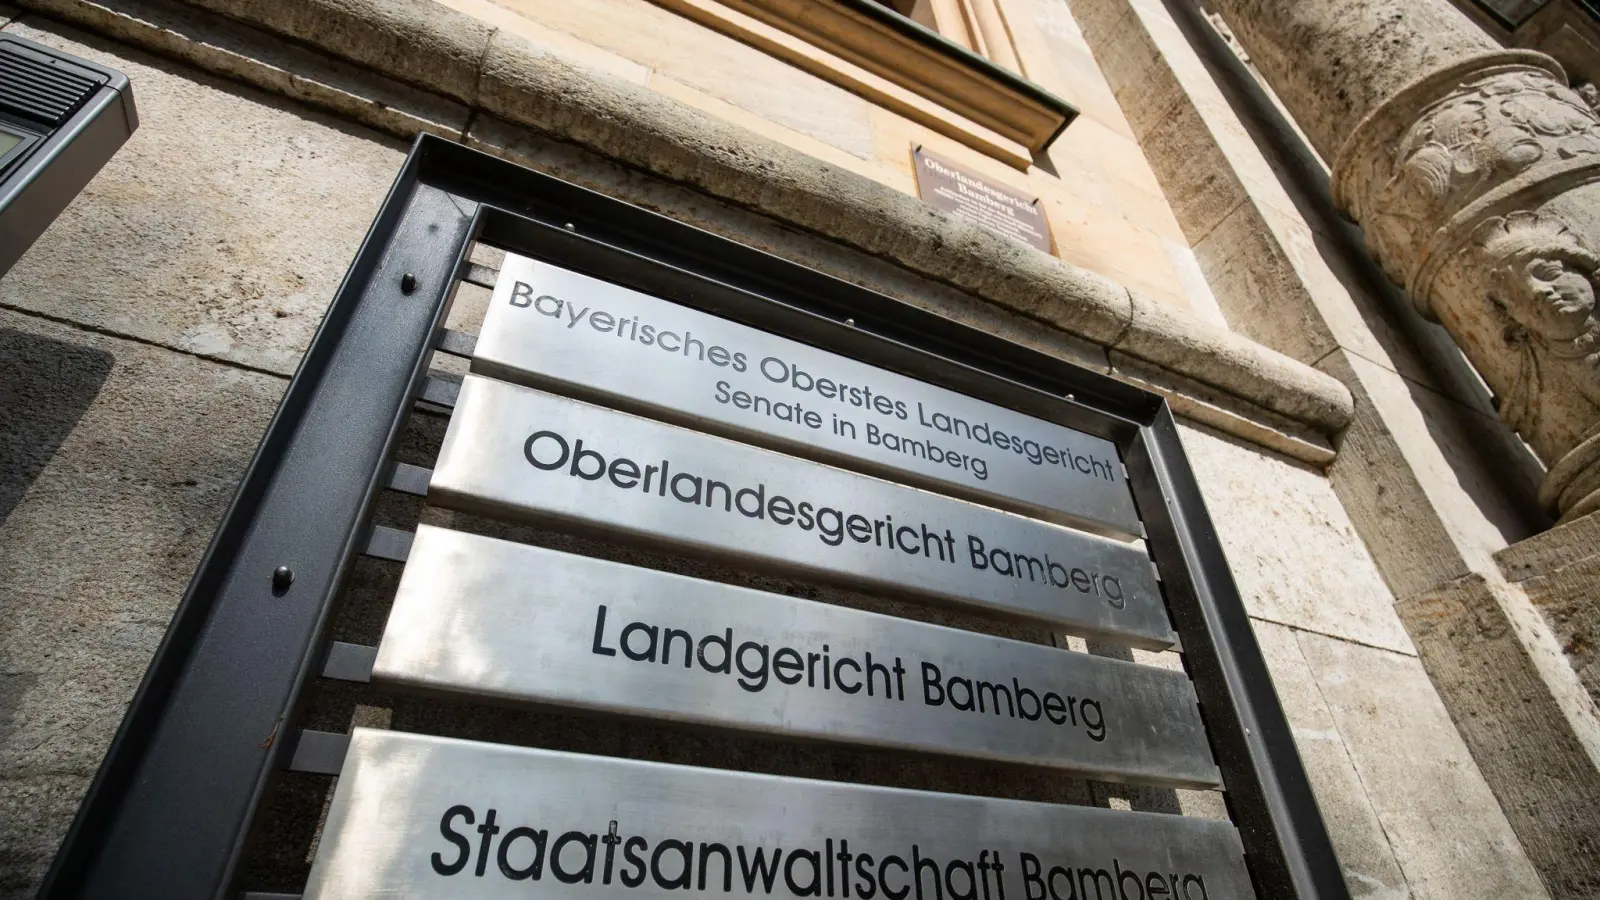 „Bayerisches Oberstes Landgericht“, „Oberlandesgericht Bamberg“, „Landgericht Bamberg“ und „Staatsanwaltschaft Bamberg“ steht auf Schildern am Eingang am Landgericht Bamberg. (Foto: Daniel Karmann/dpa)